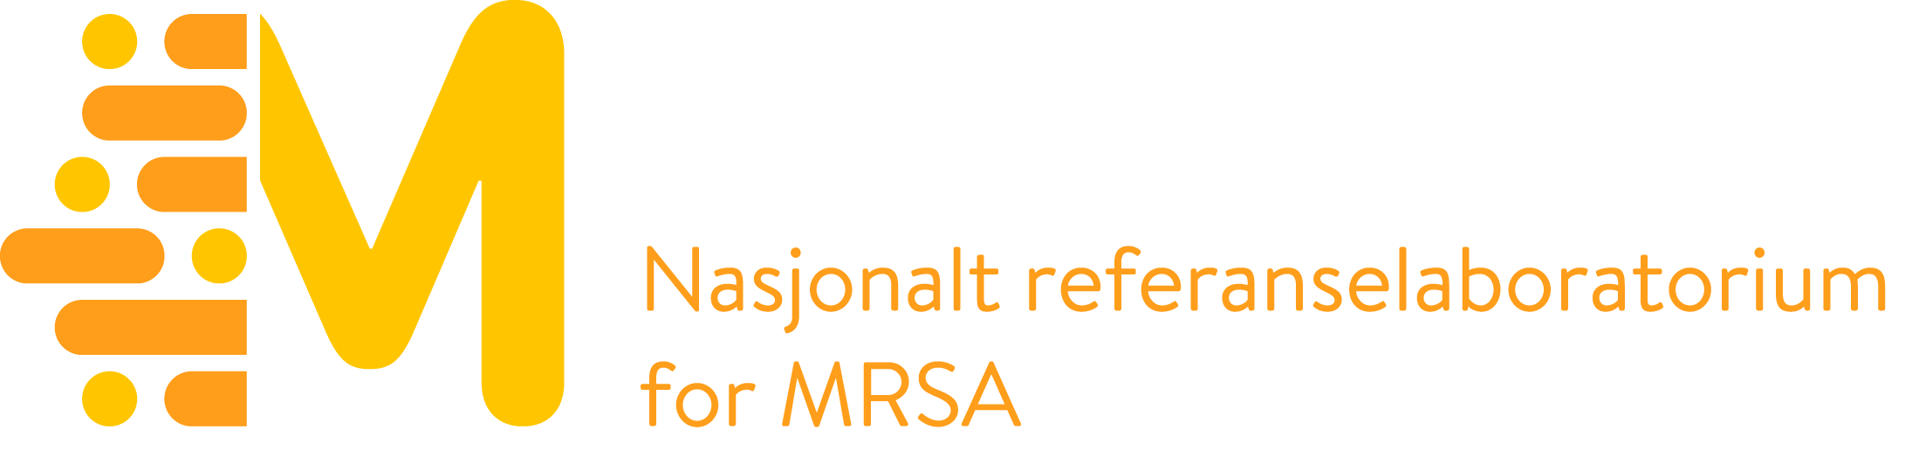 Logo Nasjonalt referanselaboratorium for MRSA. MRSA står for Meticillinresistente Staphylococcus aureus.